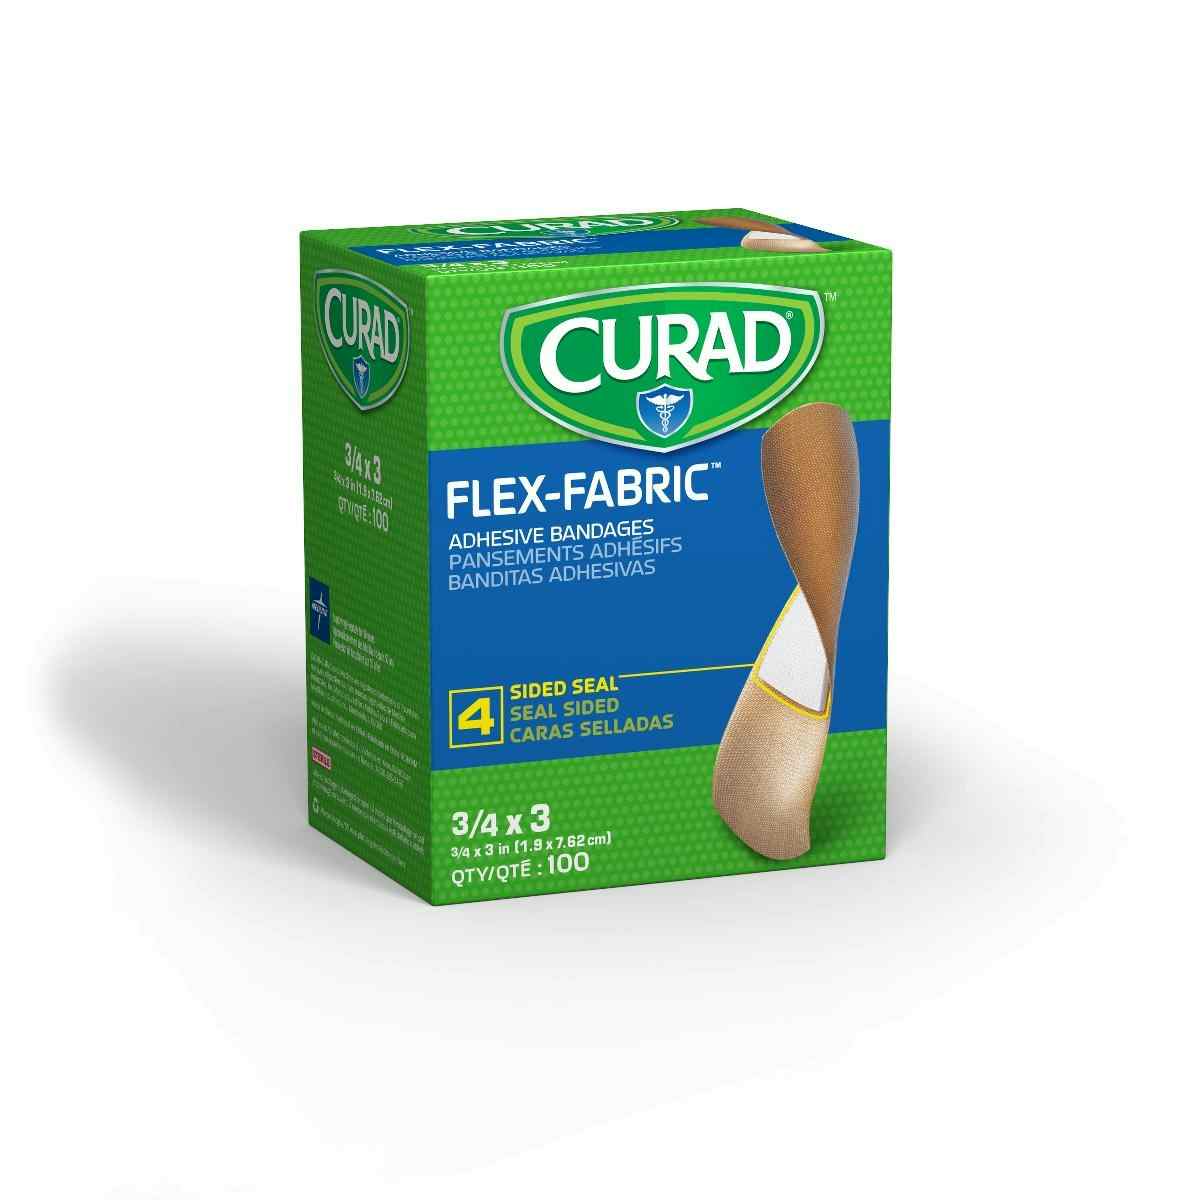 Curad Flex-Fabric Bandages, NON25650, 3/4" X 3" - Case of 1200